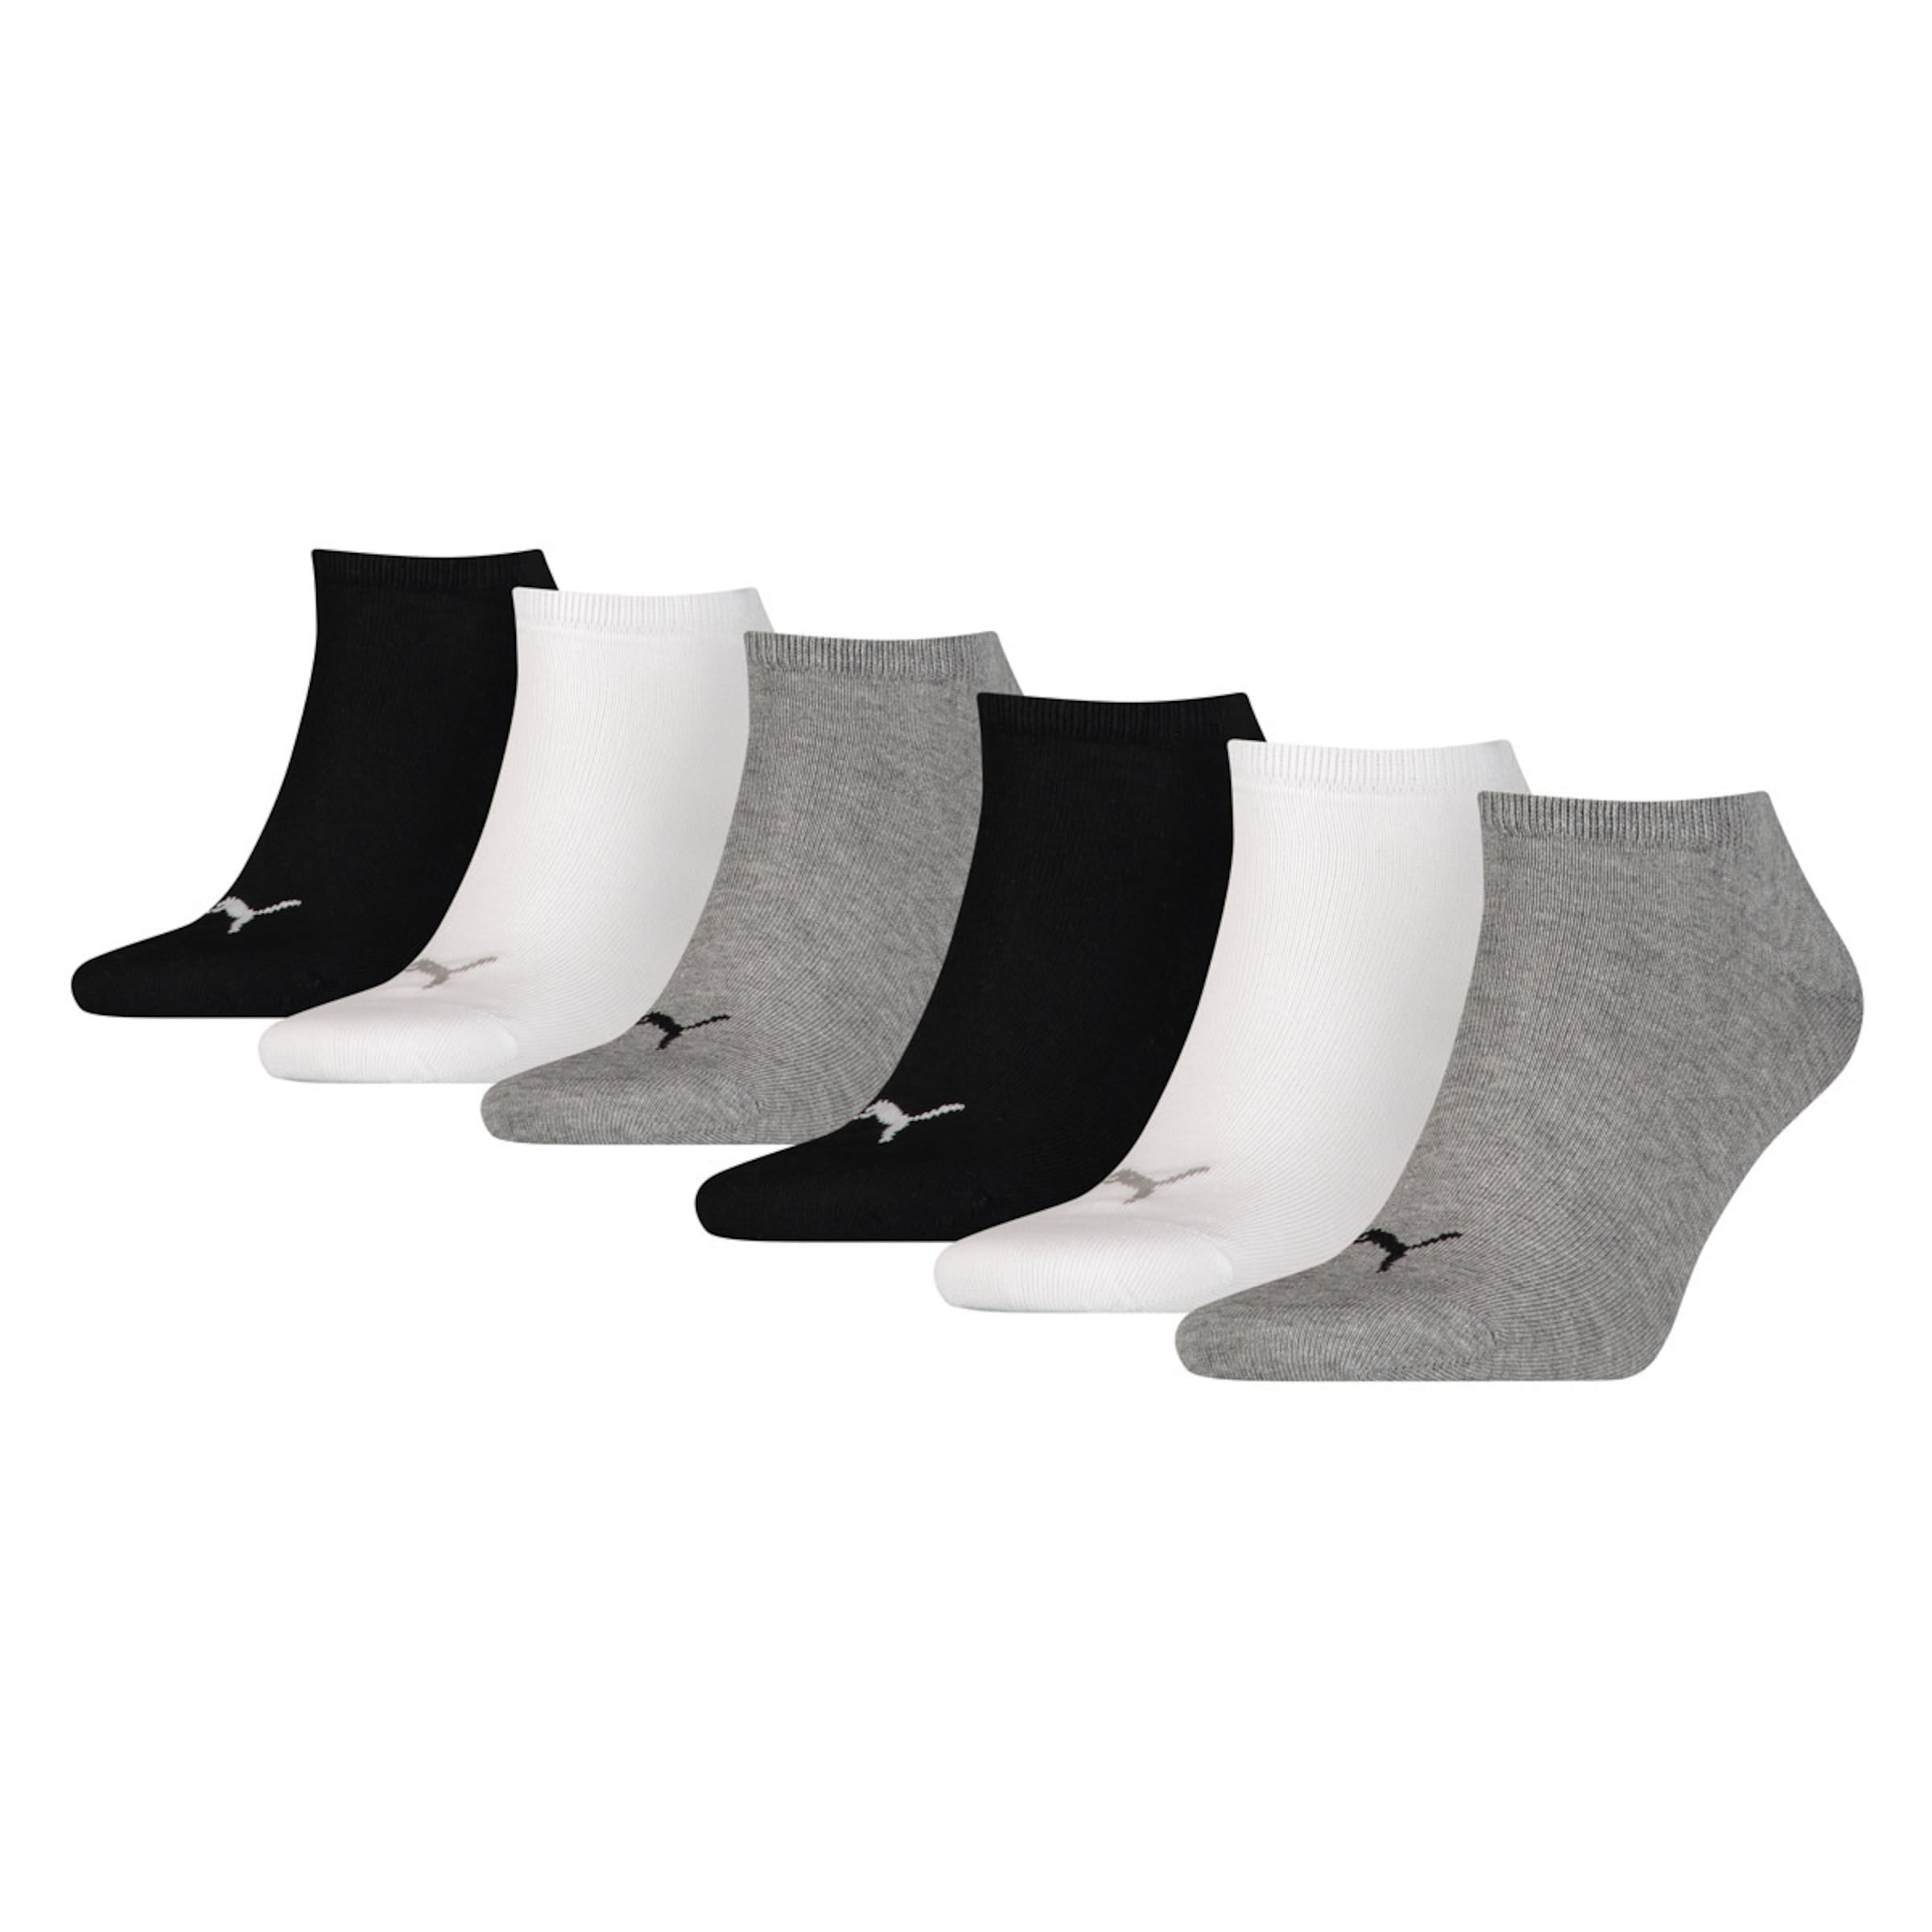 PUMA Socken in Graumeliert, Schwarz, Weiß 